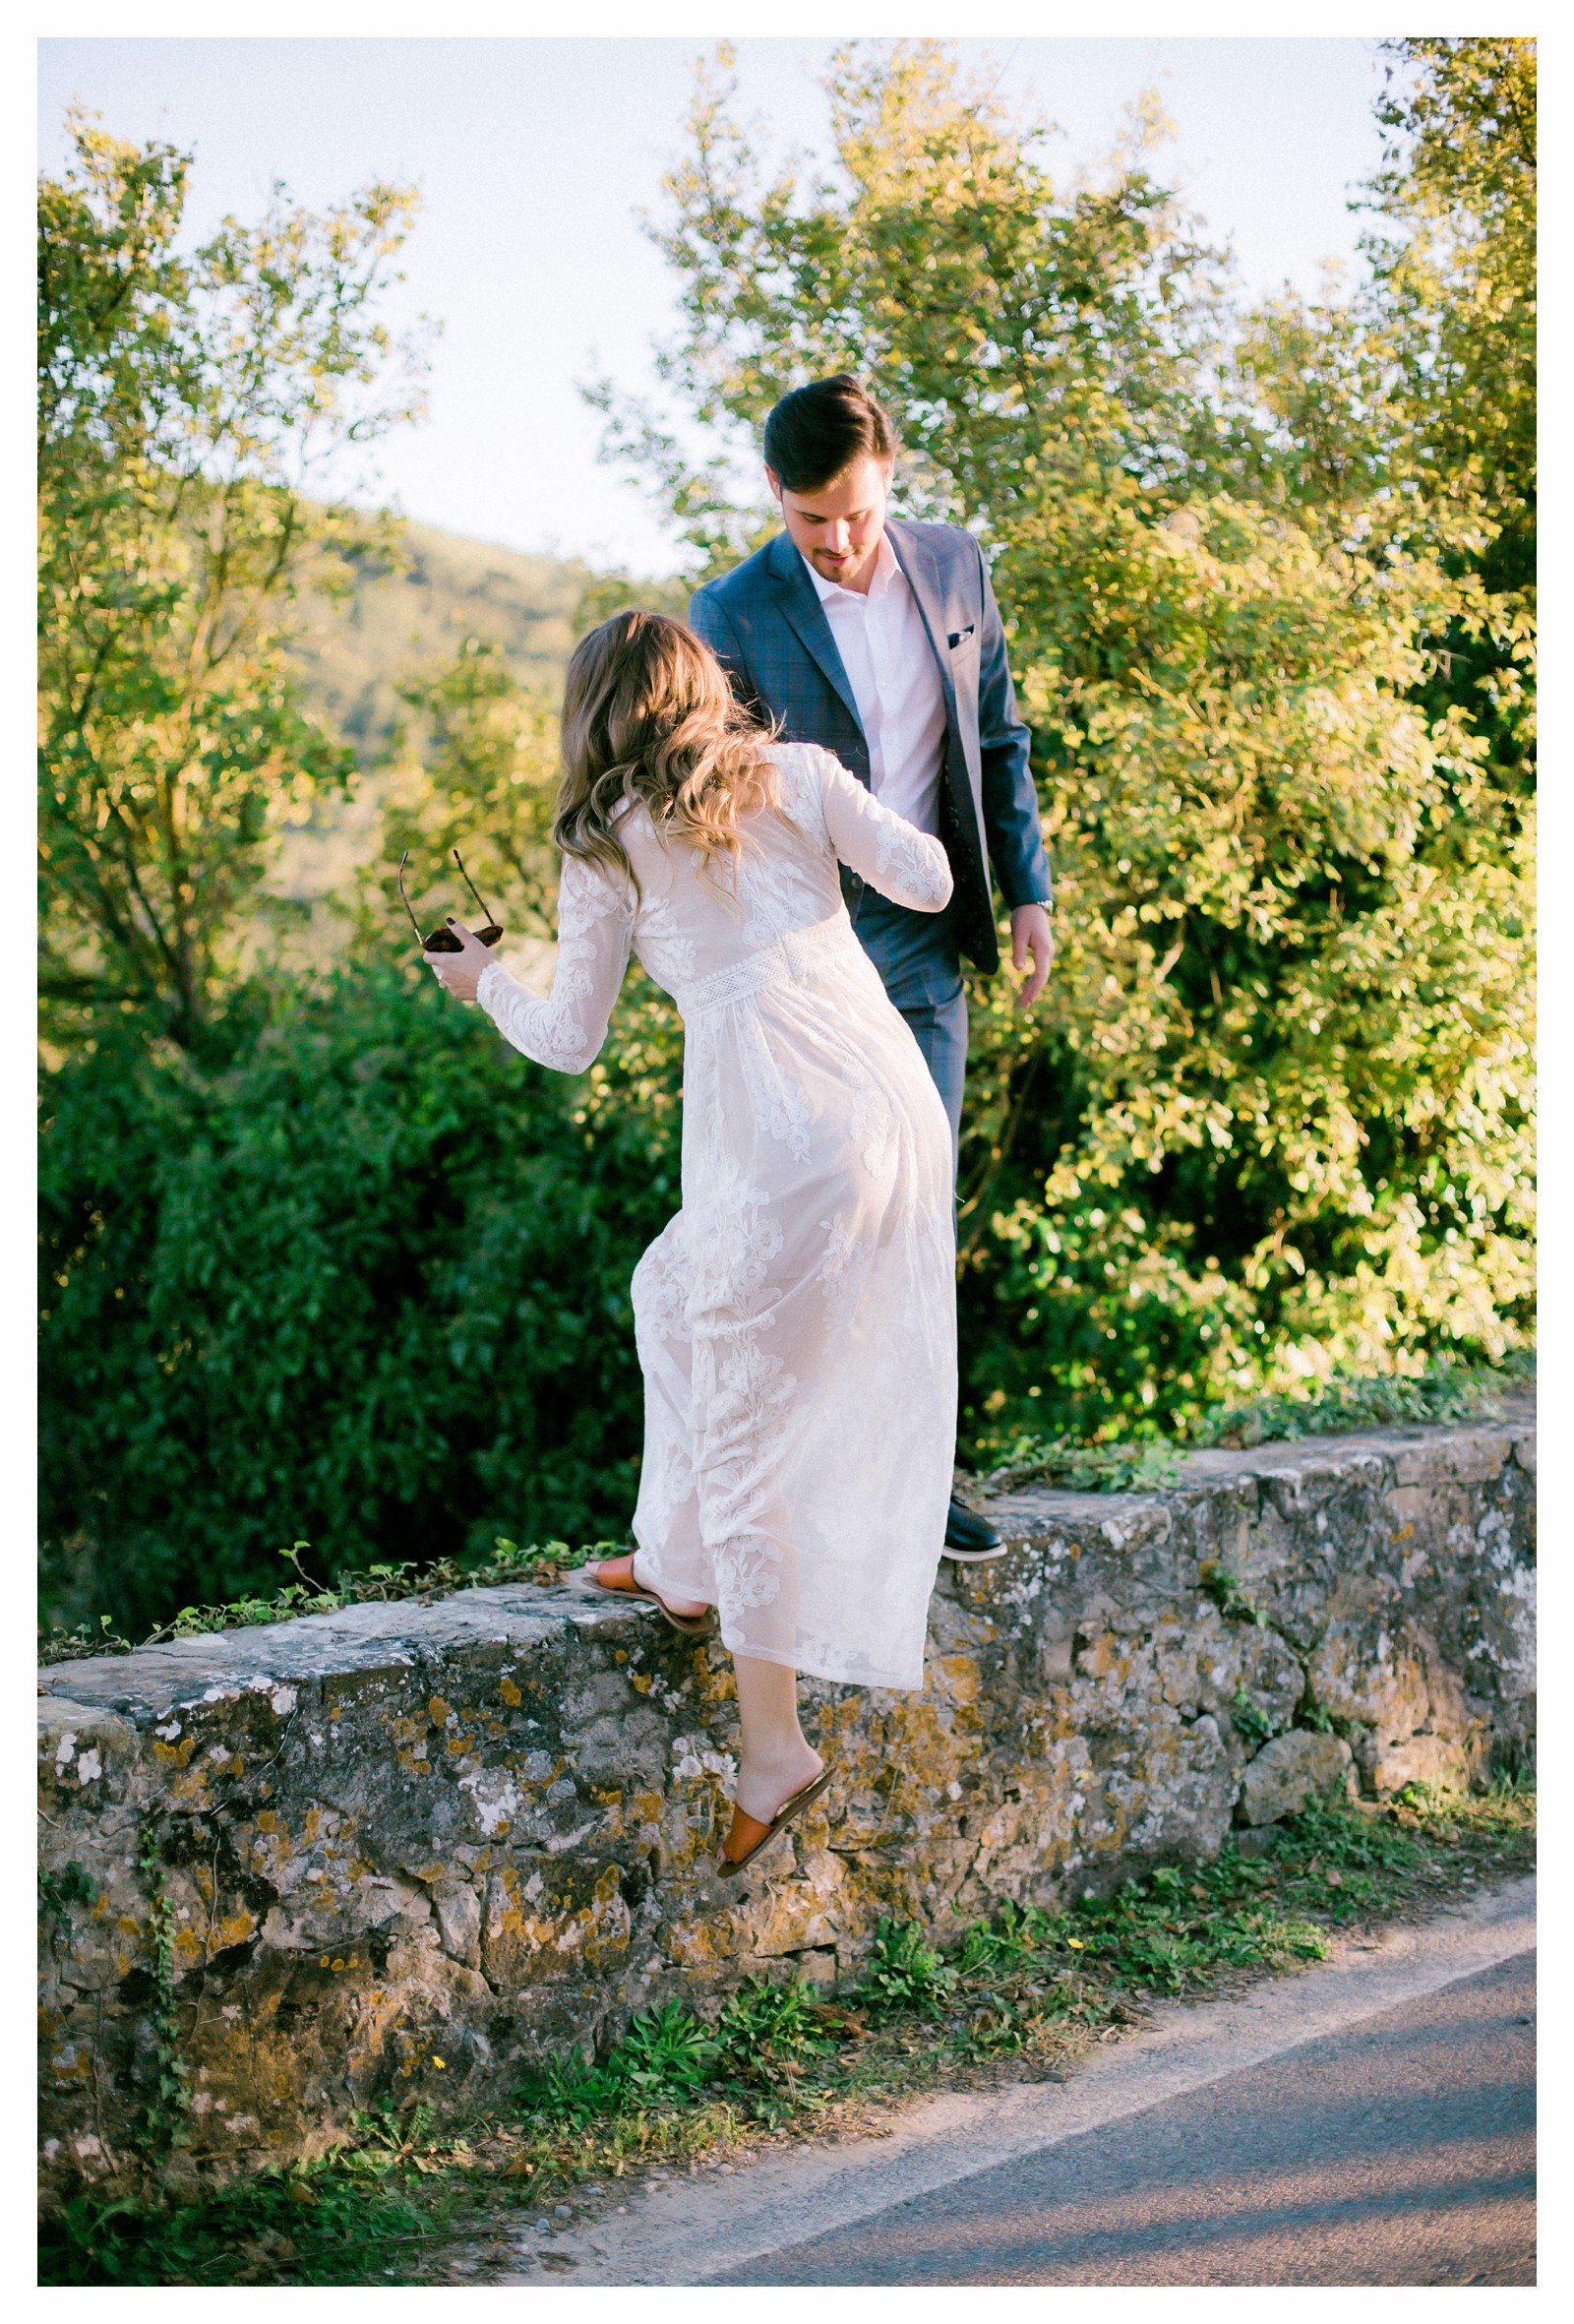 tuscany-countryside-val-dorcia-wedding-couple-photoshoot-photographer_0021.jpg